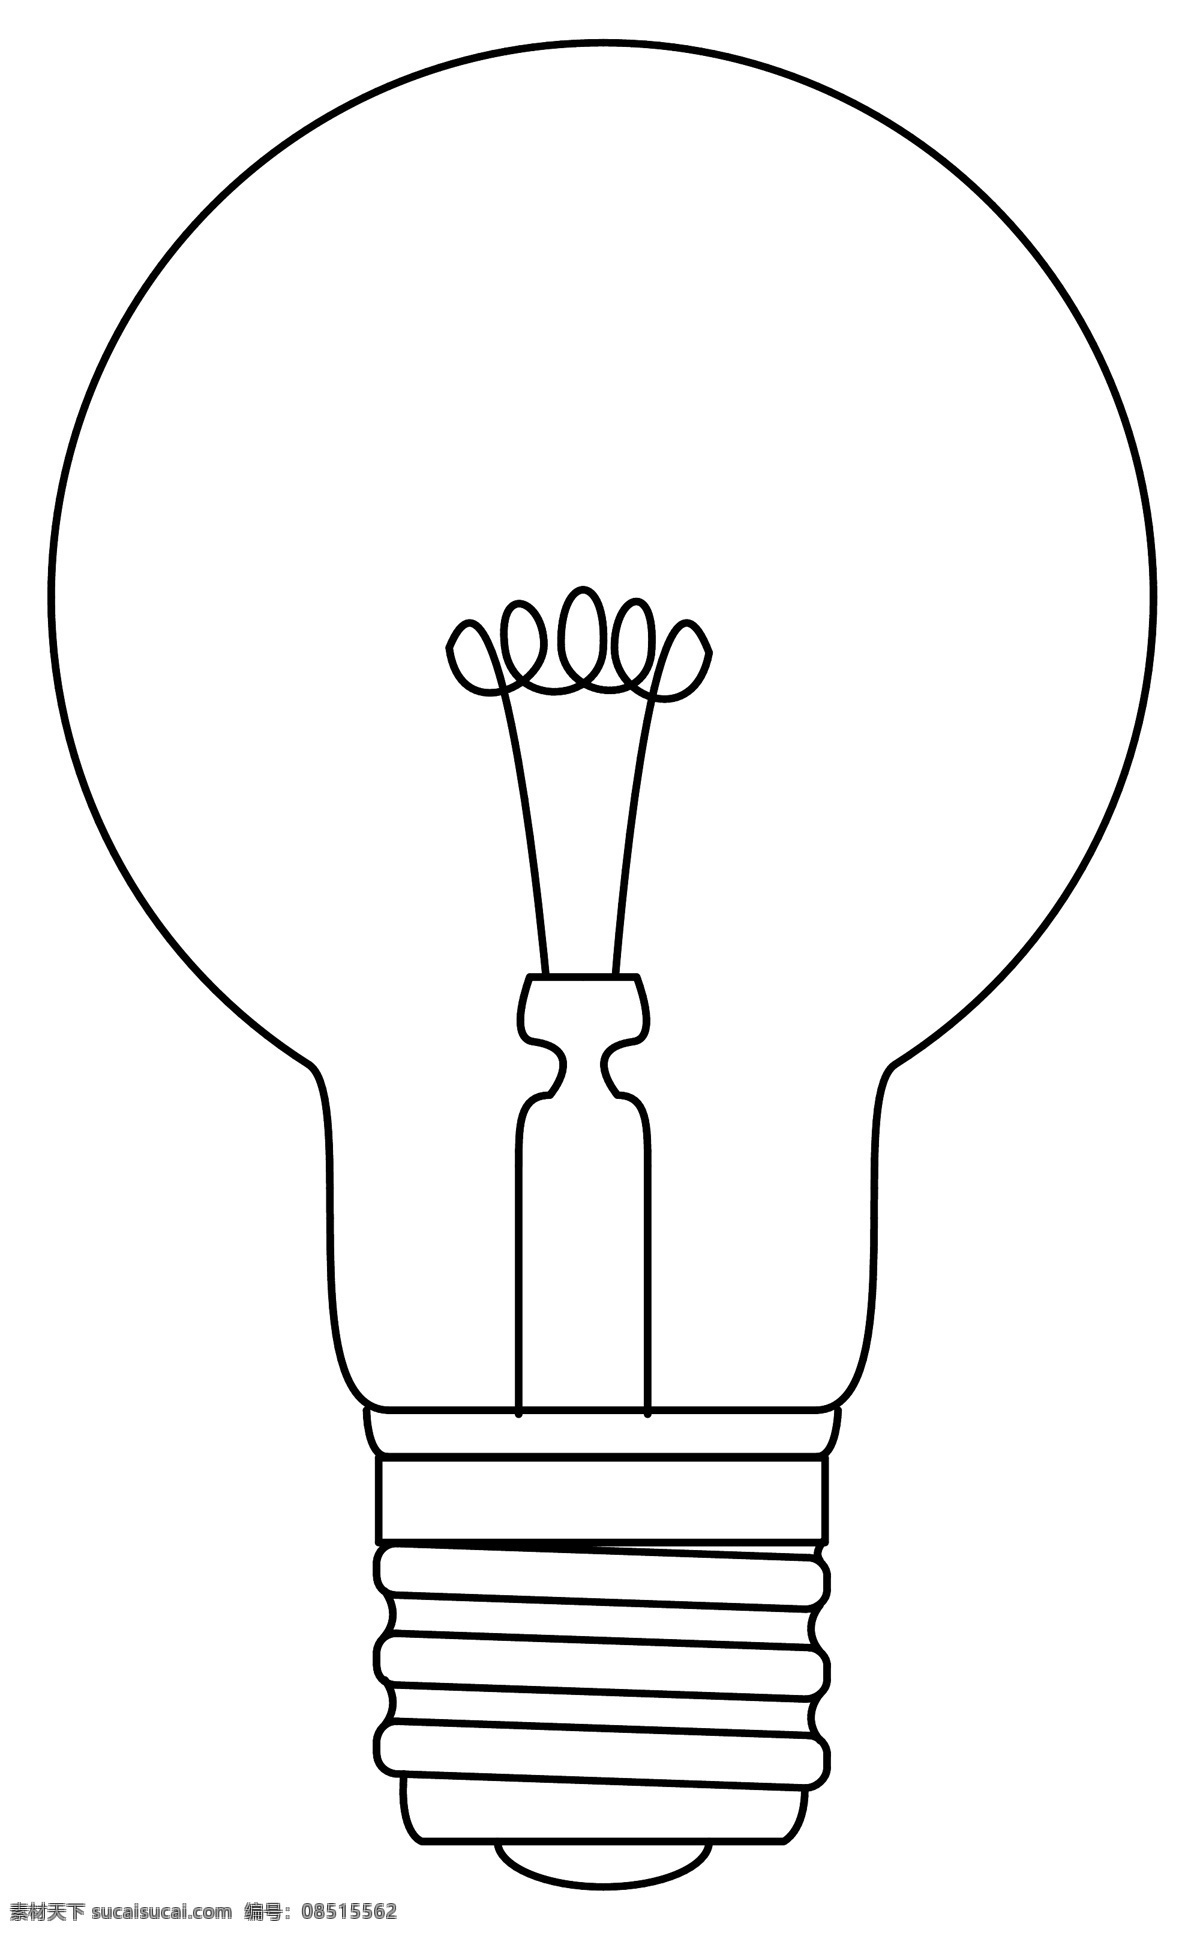 灯泡 灯 电灯 台灯 白炽灯 日光灯 射灯 筒灯 路灯 卡通灯 灯具 吊灯 玻璃灯 发光 电 分层